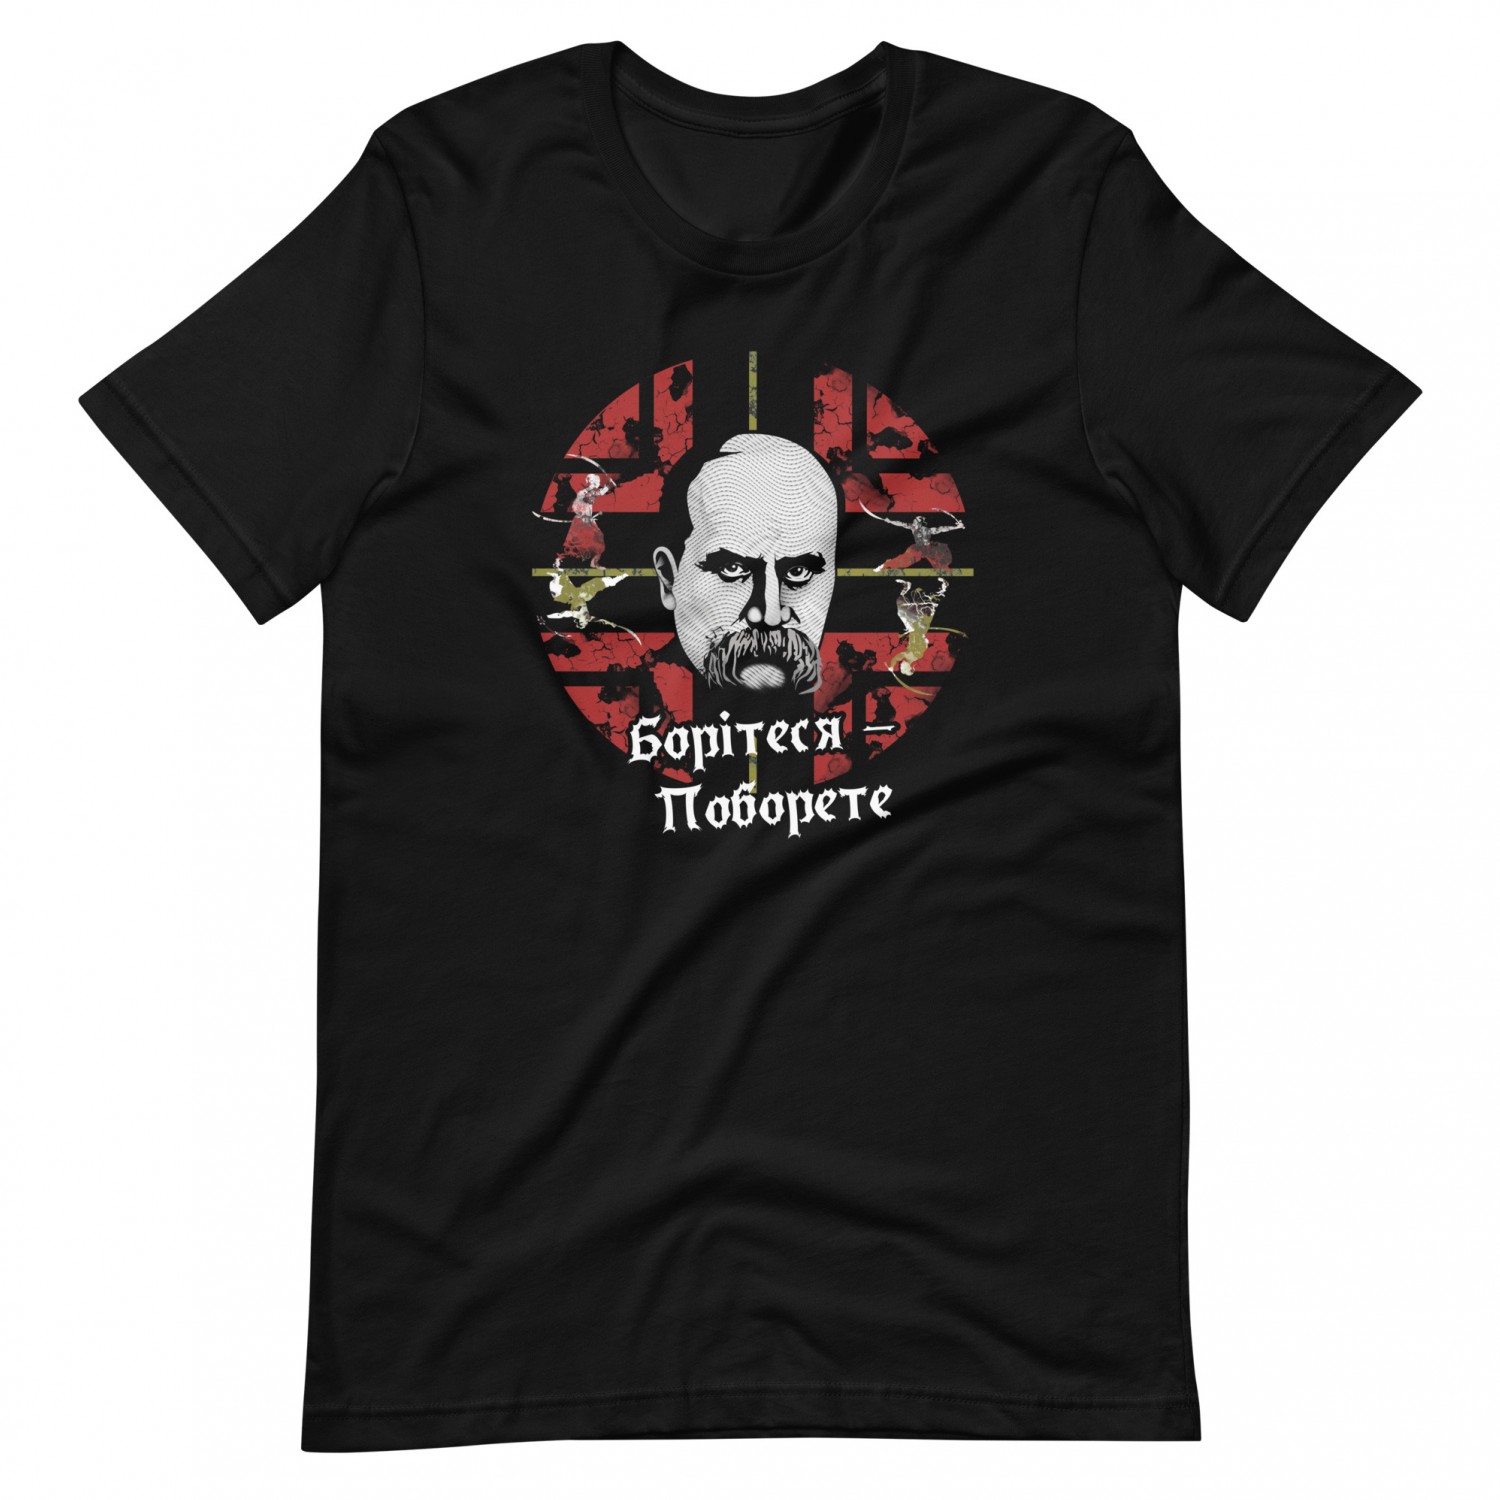 Buy T-shirt "Shevchenko"